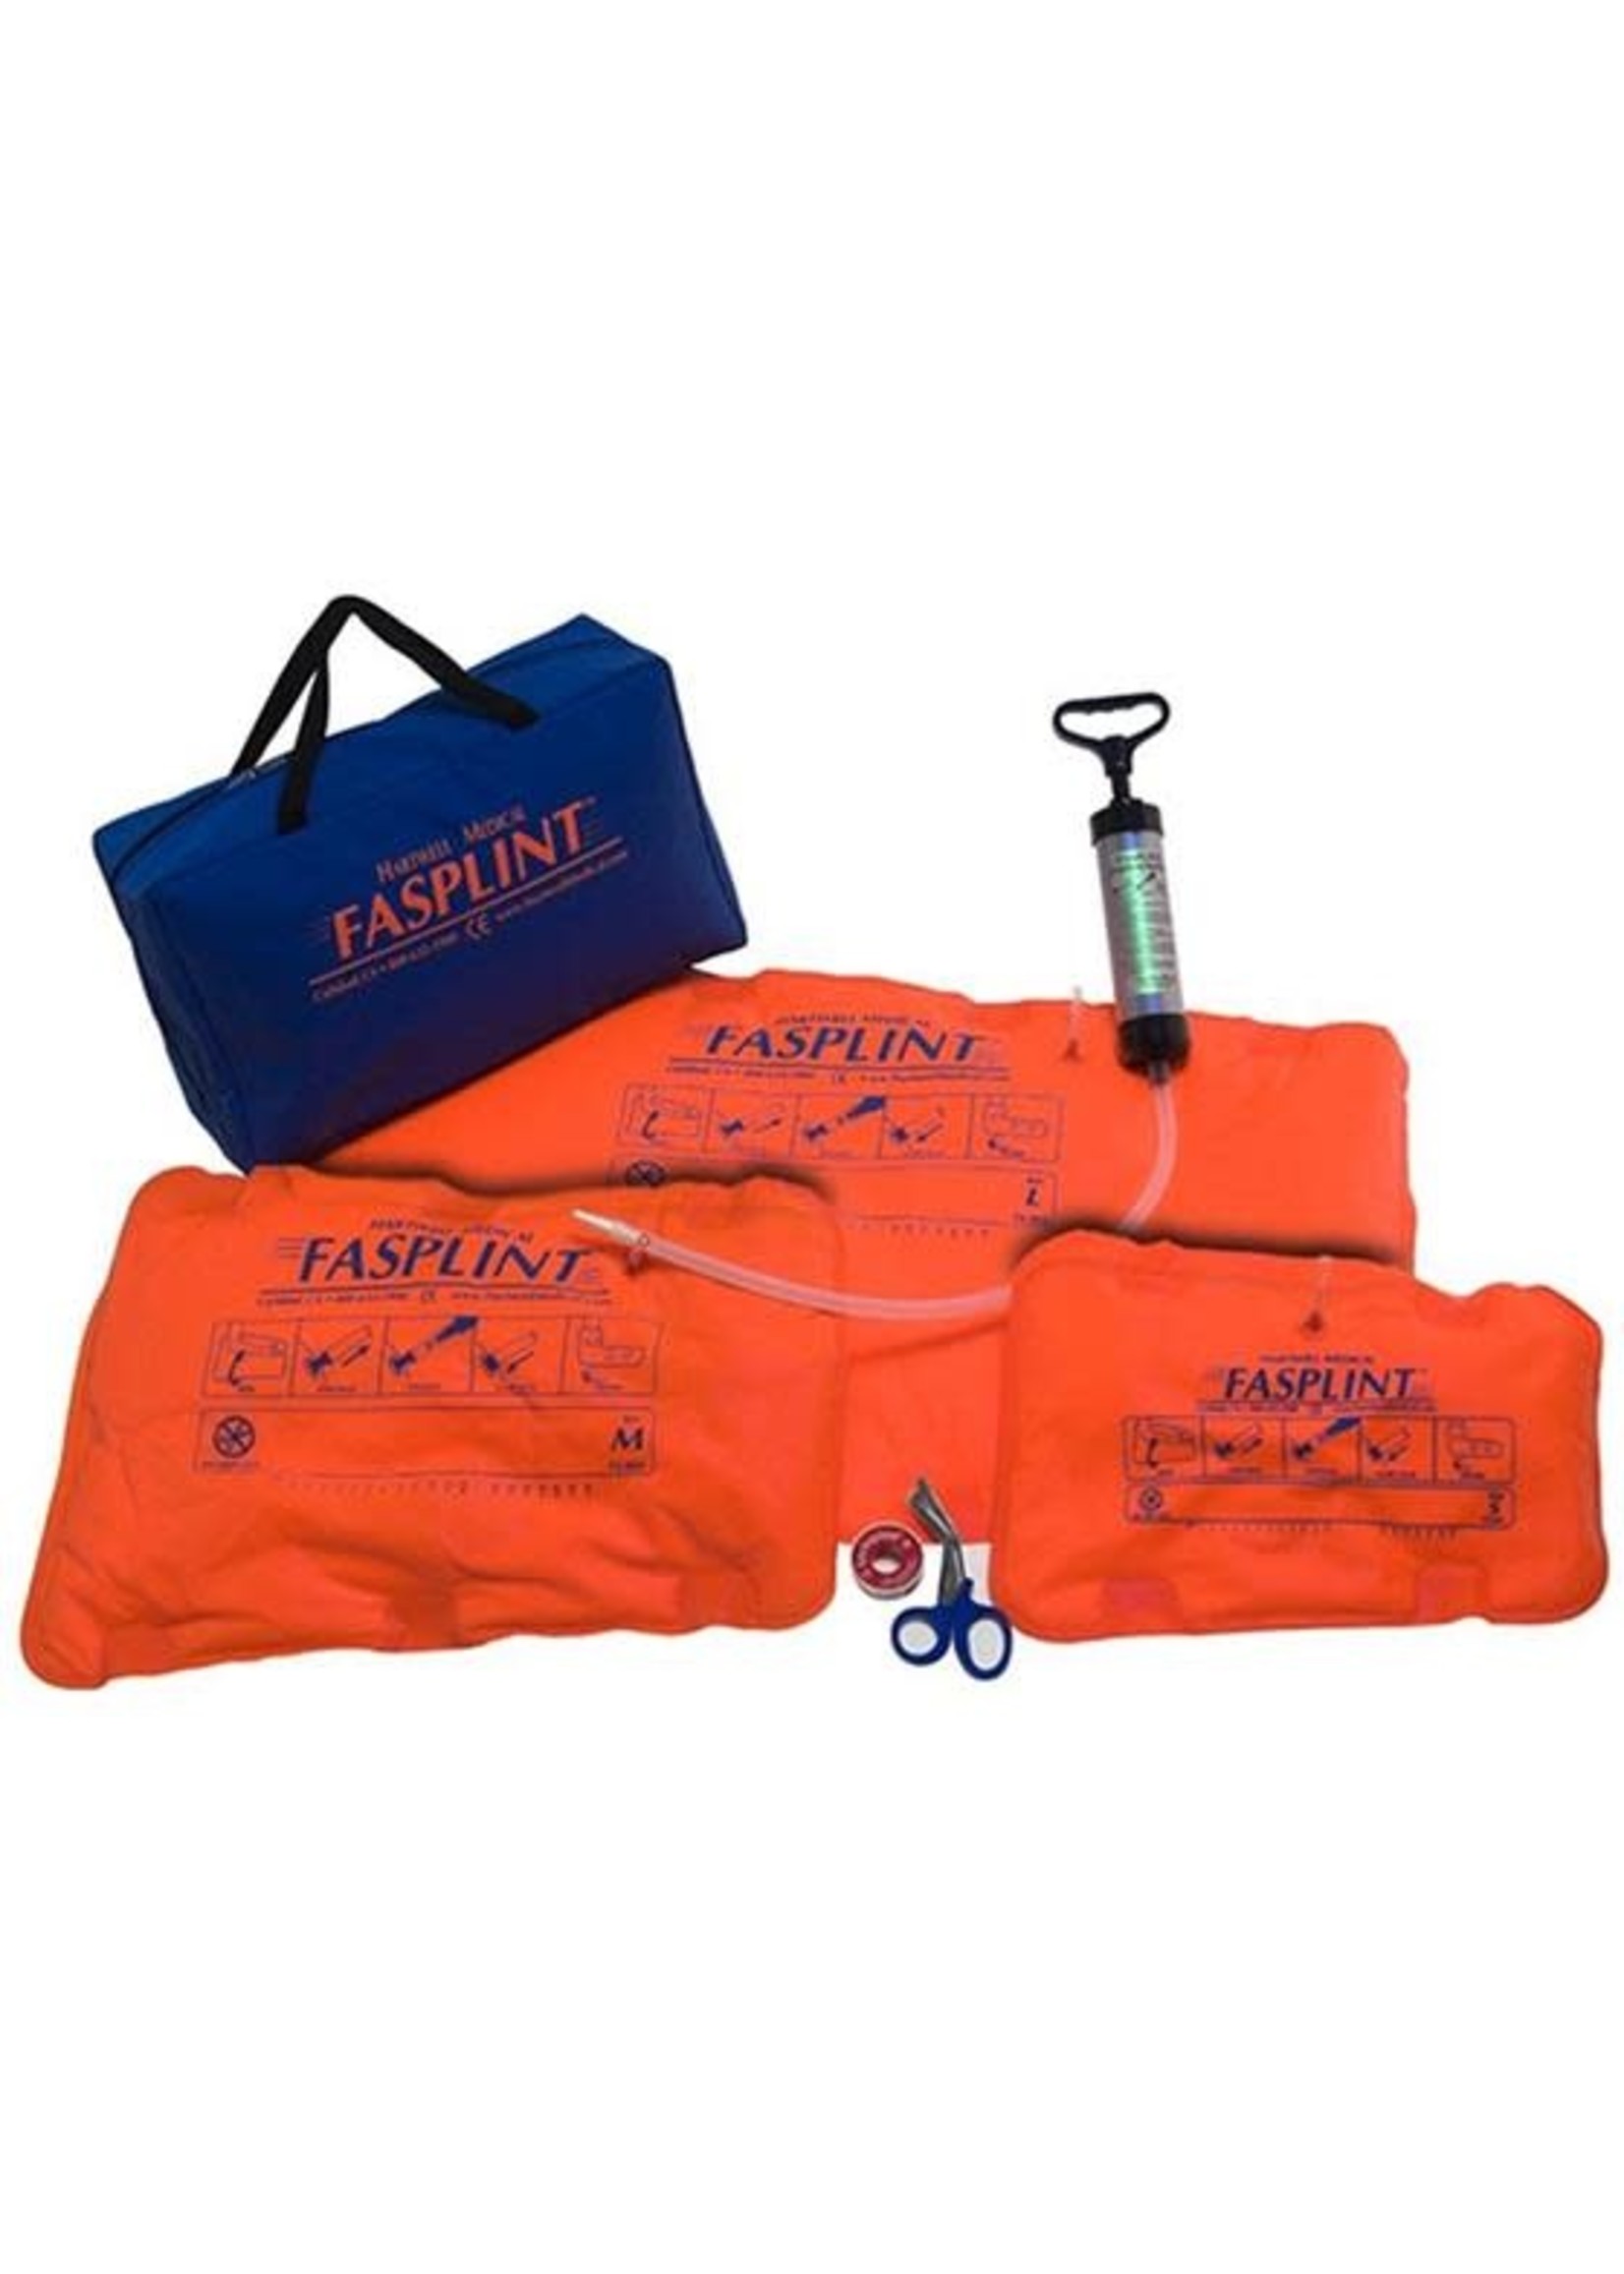 Fasplint Vacuum Splints Full Kit